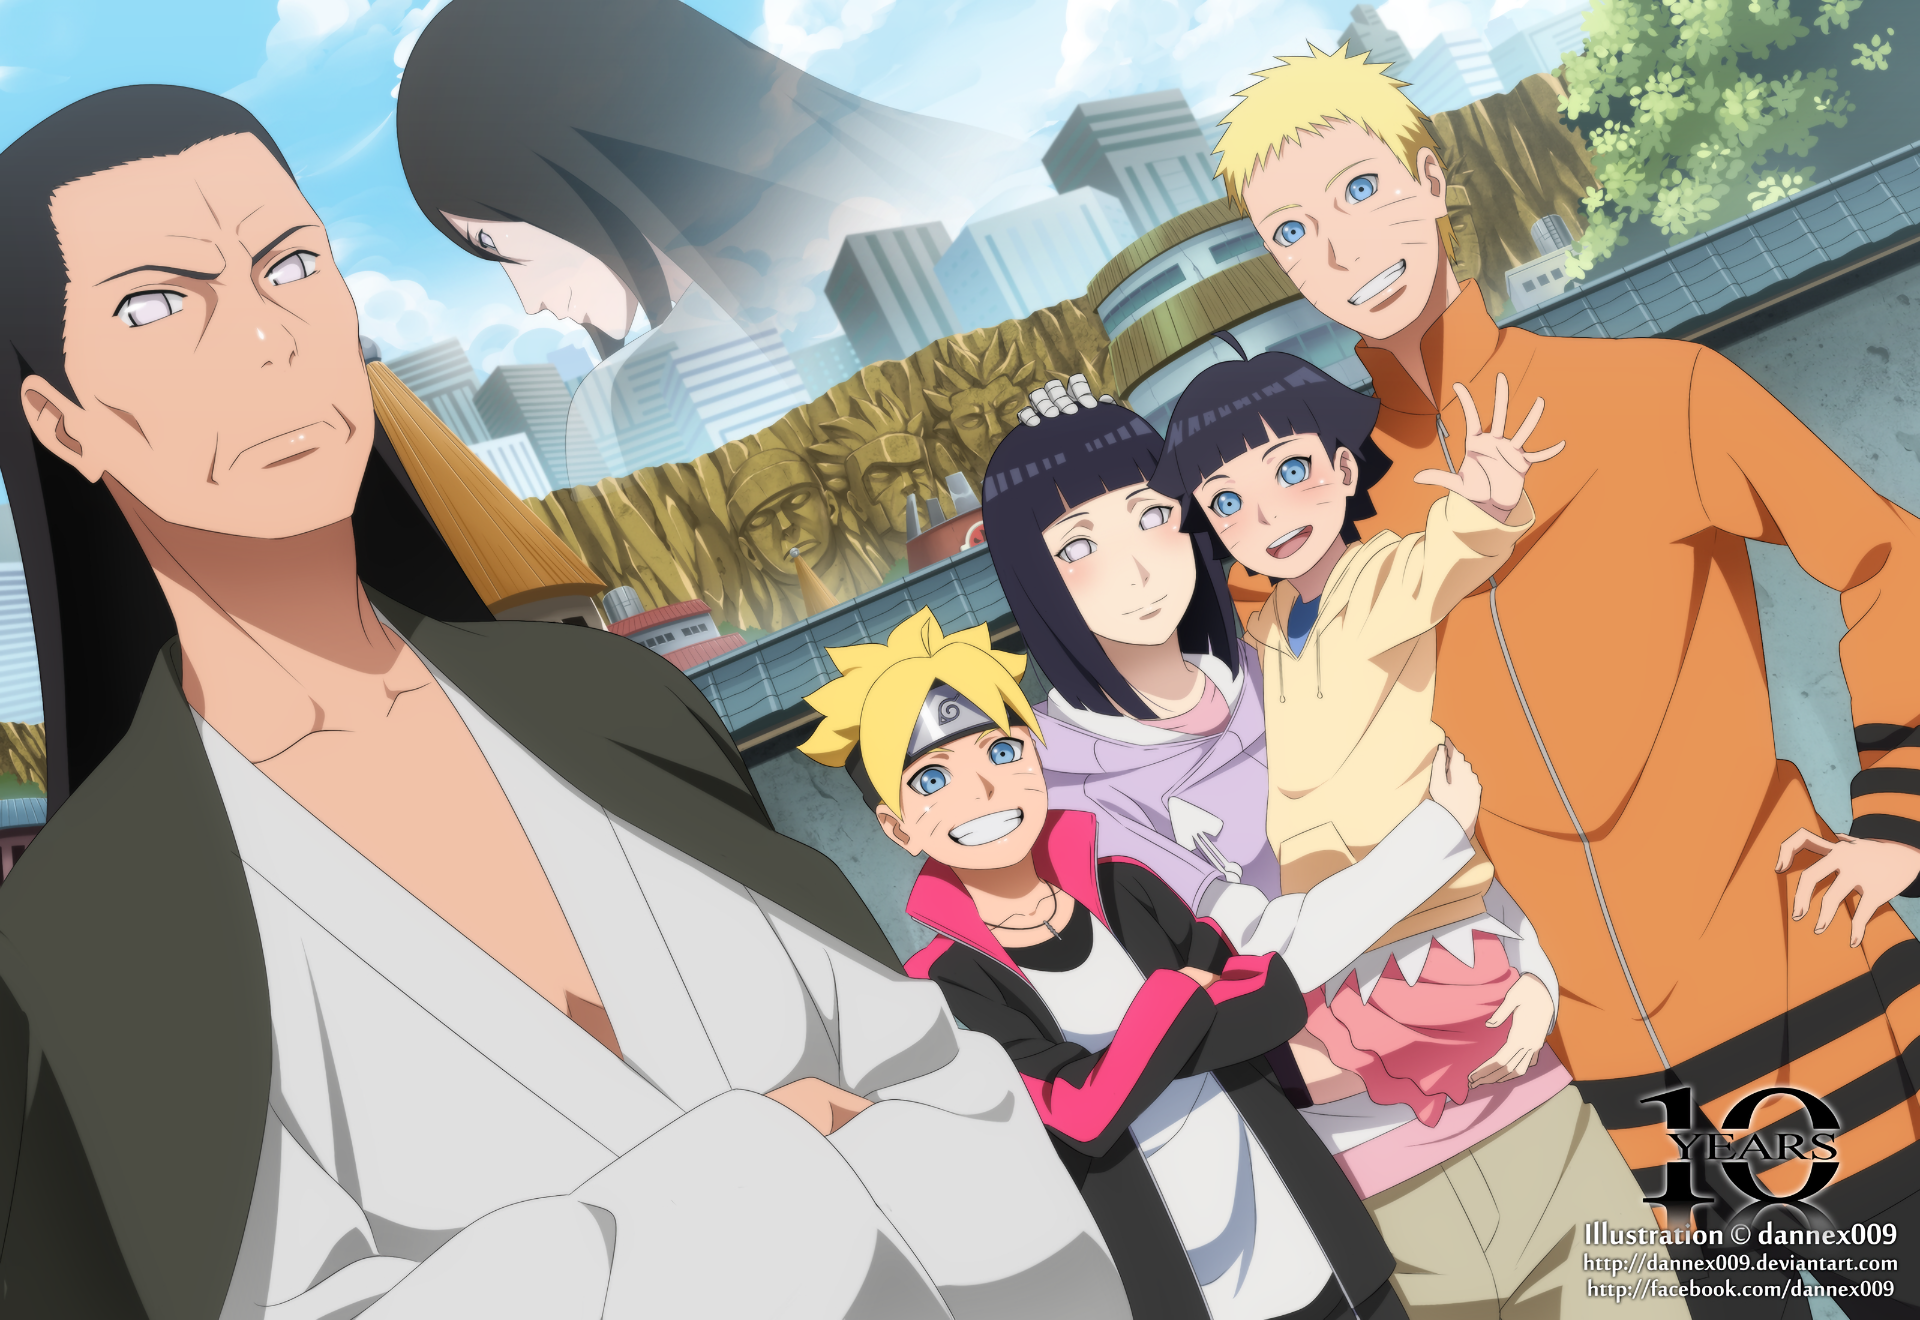 Hd Wallpaper - Naruto And Hinata Family , HD Wallpaper & Backgrounds